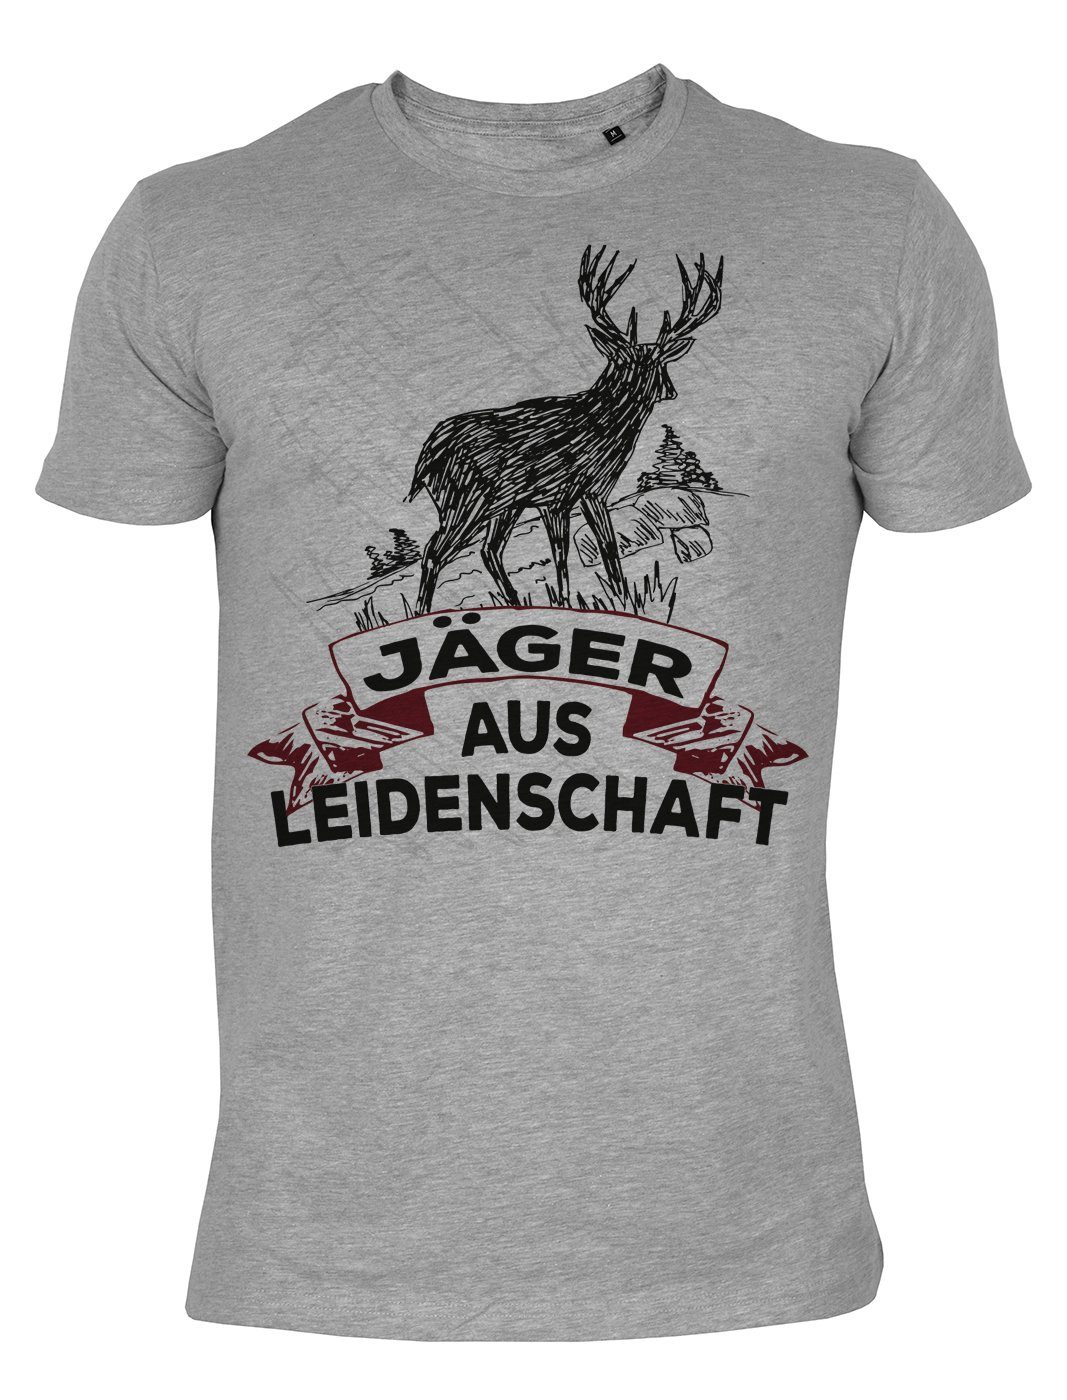 : Motiv Shirts Jäger aus Jagdsport Leidenschaft Tini Hirsch Jagdsport - T-Shirt Motiv Jäger